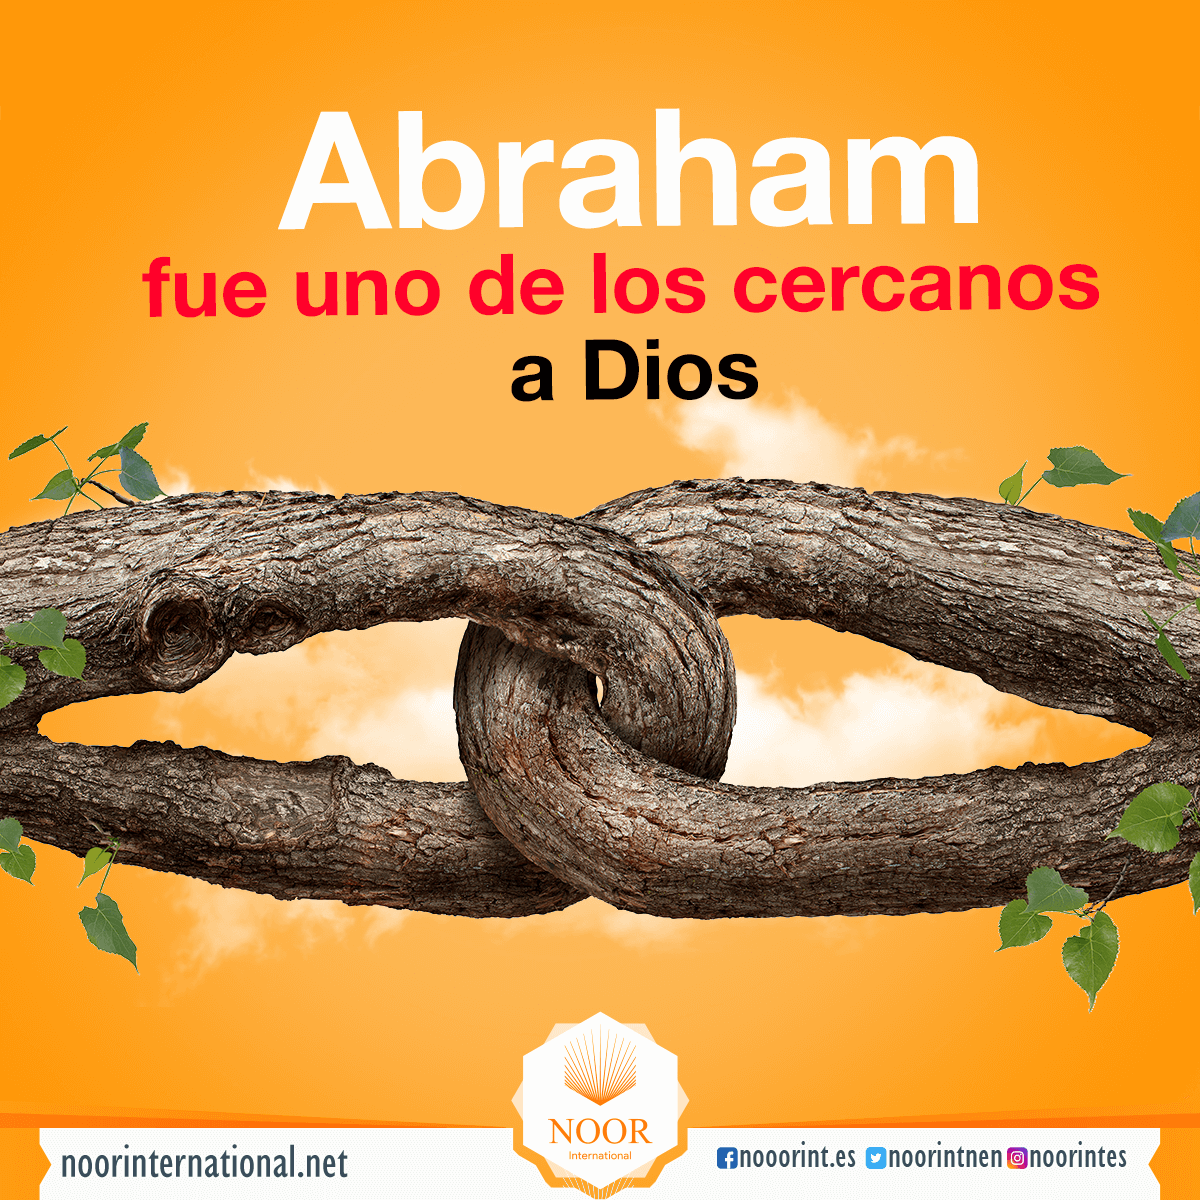 Abraham fue uno de los cercanos a Dios